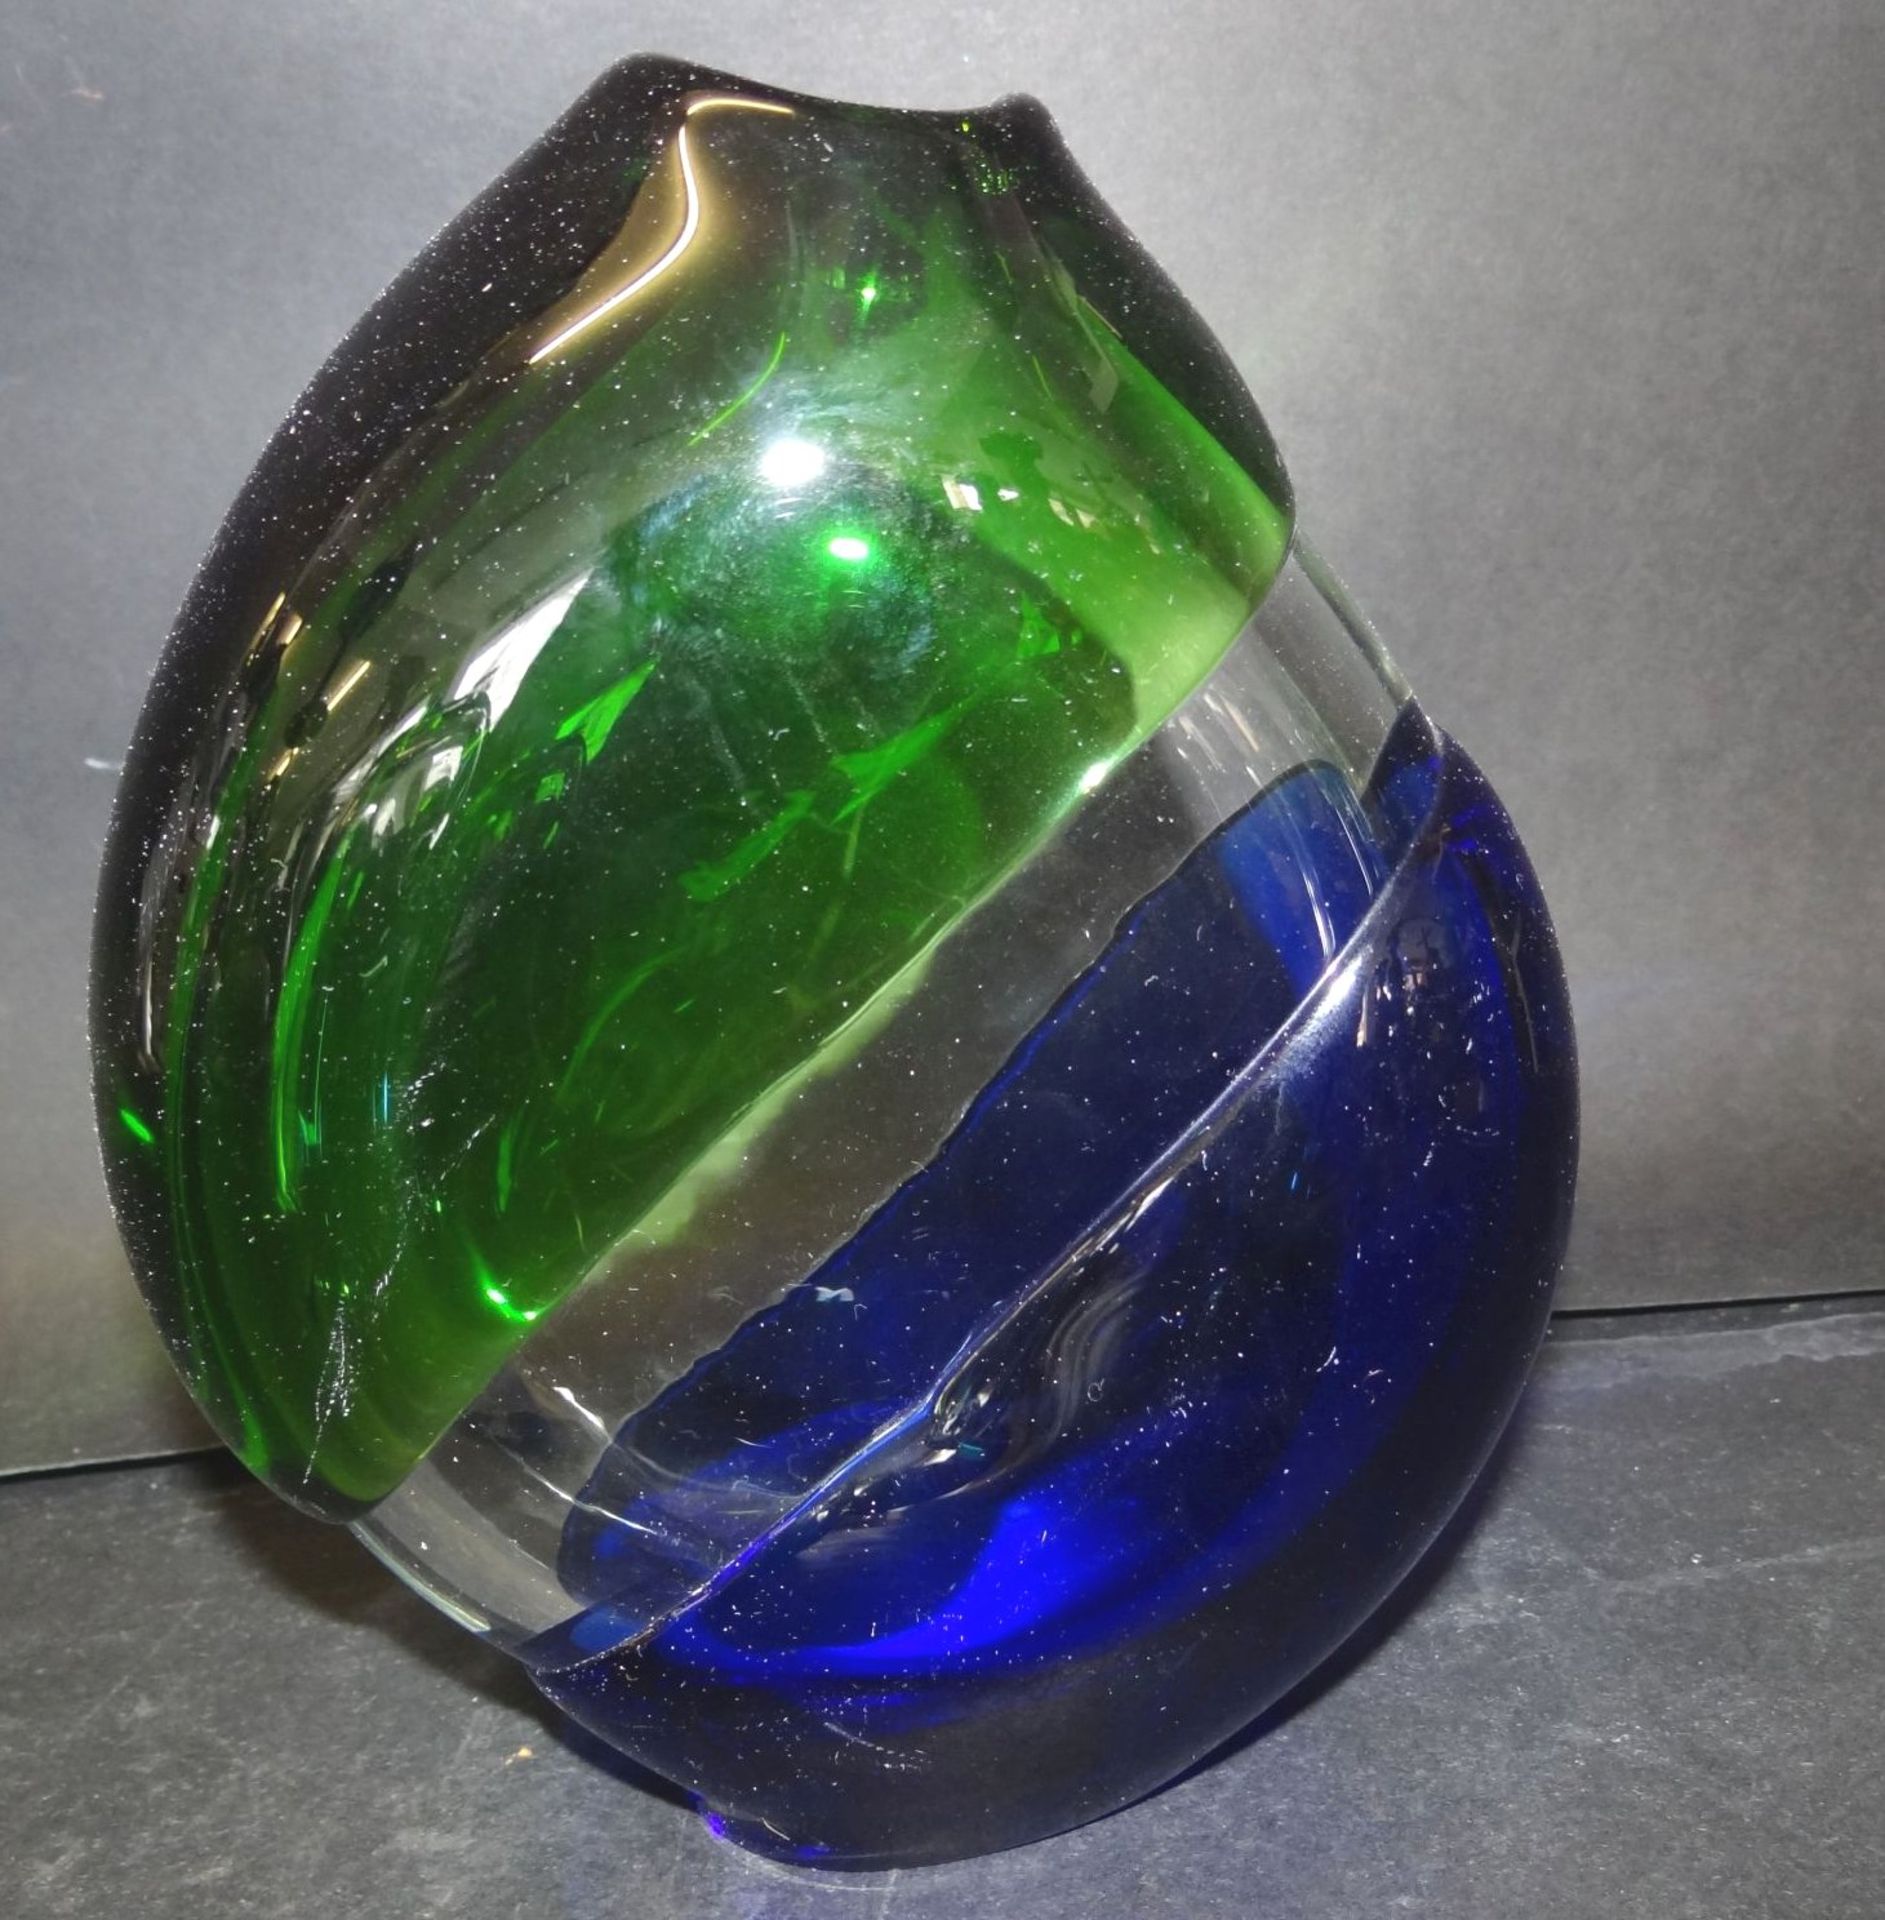 grosse, schwere Kunstglas-Vase, grün/weiss/blau, 18x14 c